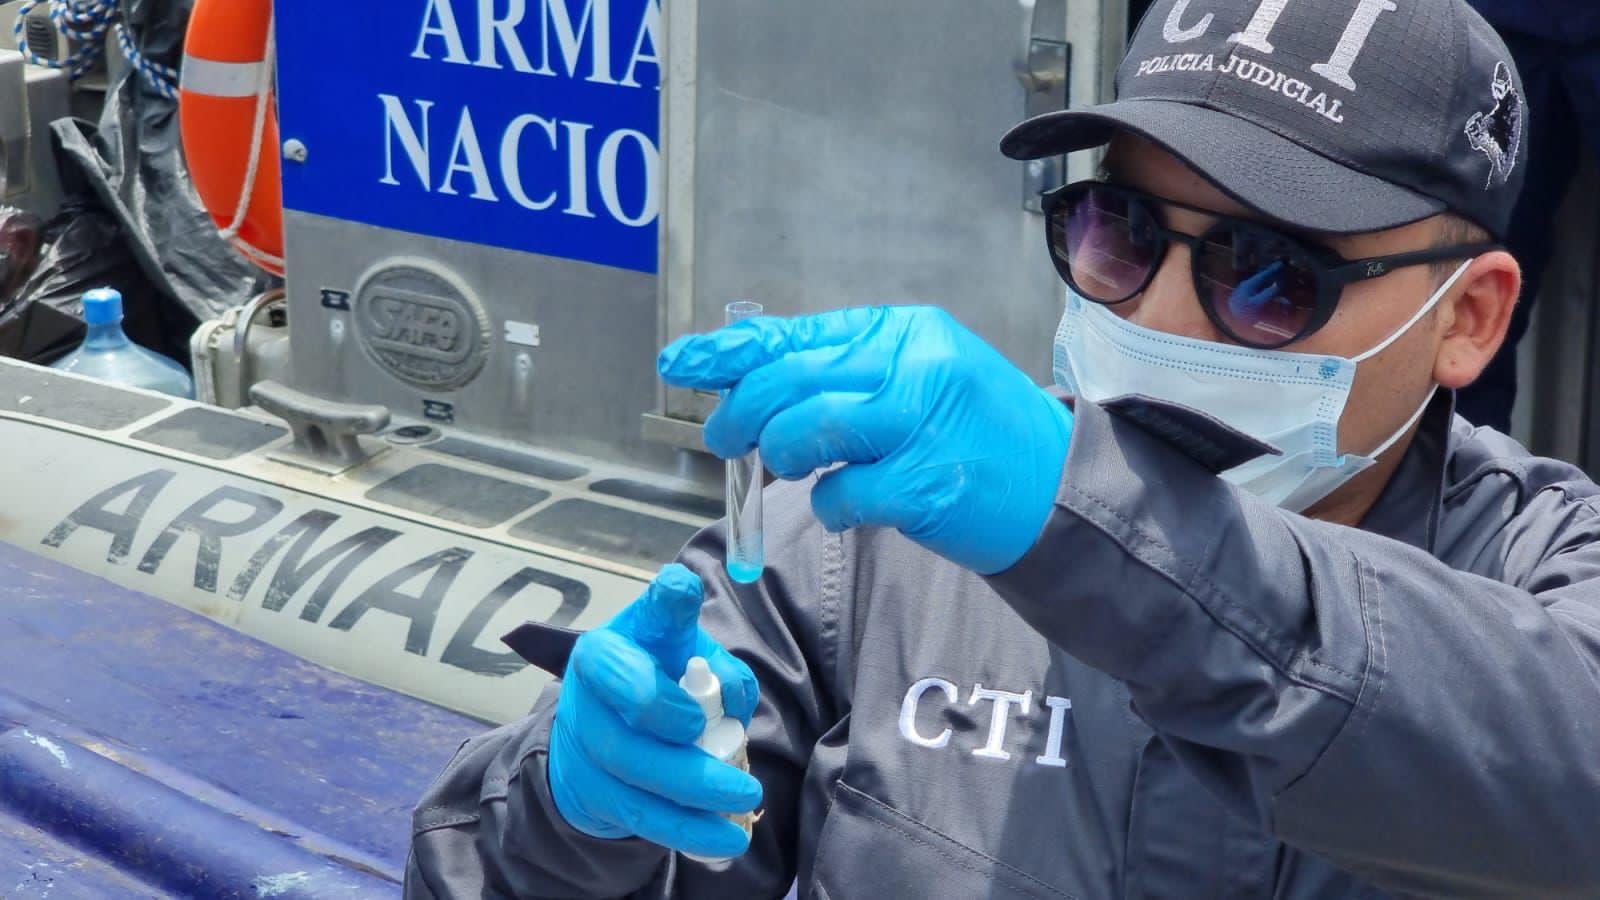 985 paquetes de cocaína fueron incautados de un sumergible en el Pacífico